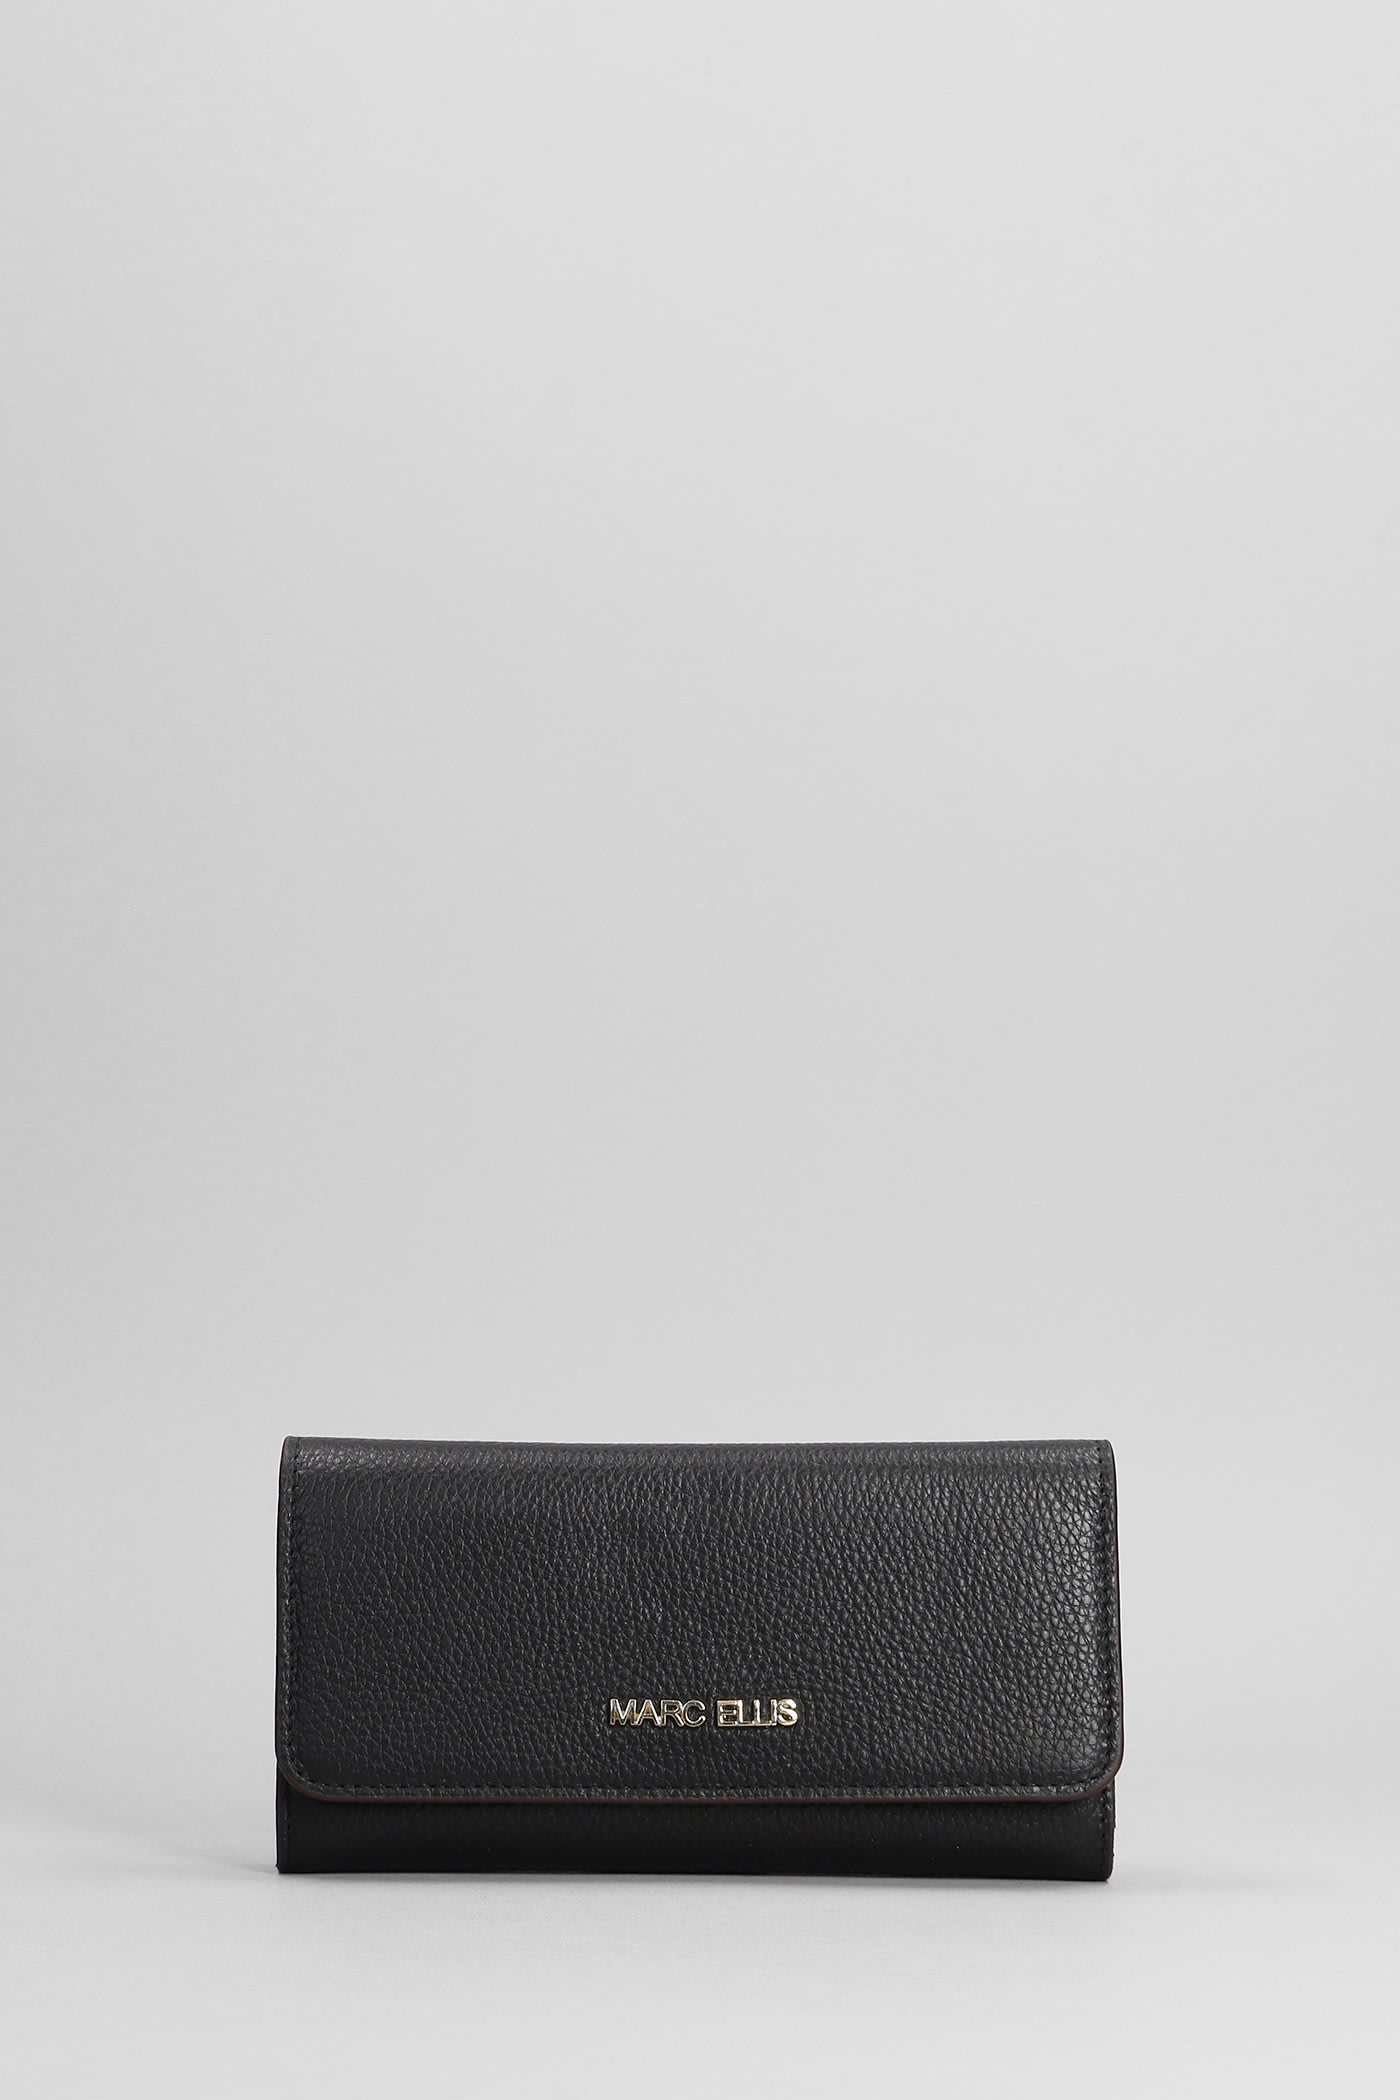 Marc Ellis Ariel Wallet In Black Faux Leather